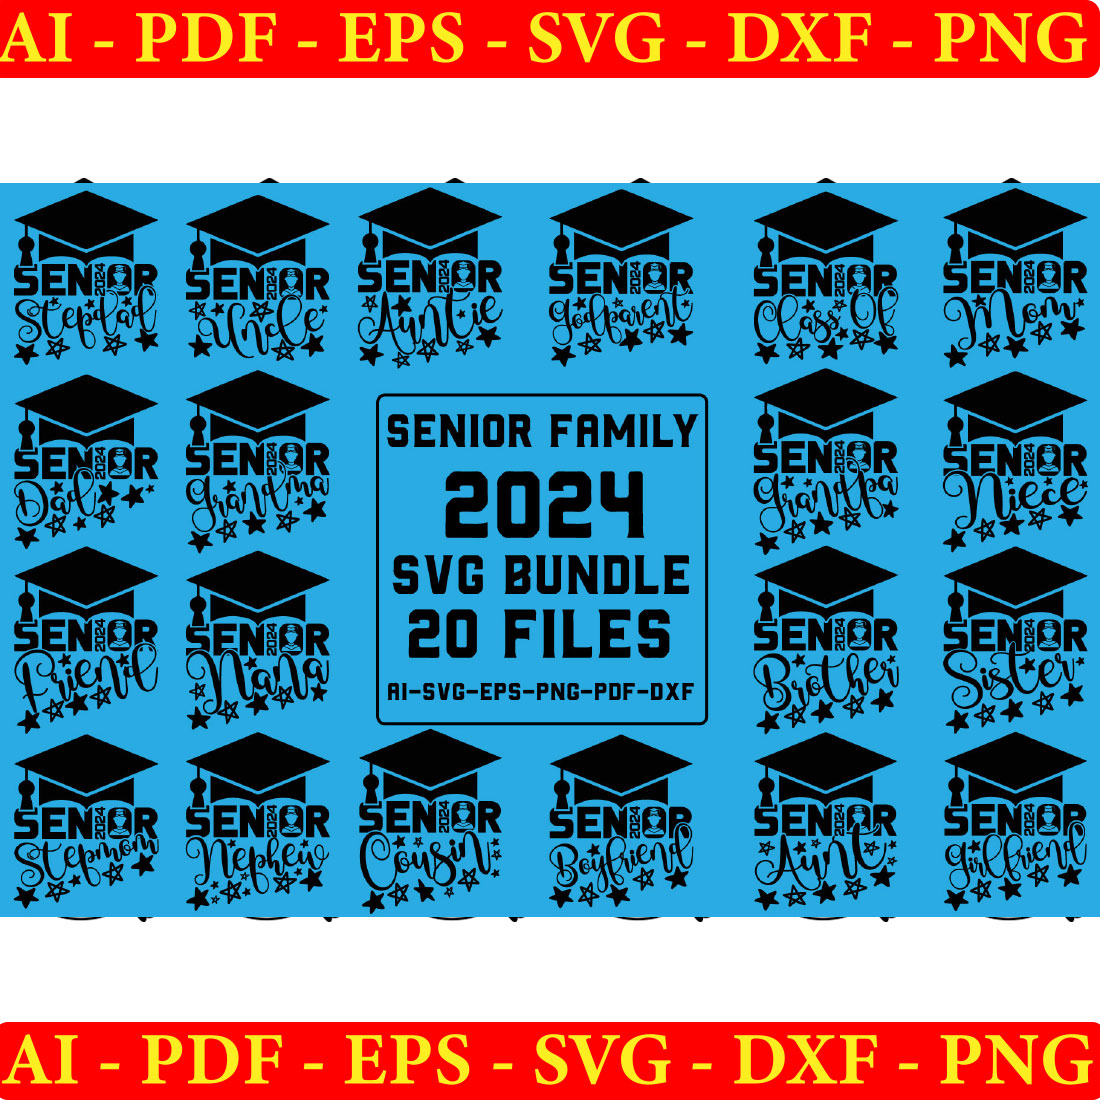 Senior Family 2024 SVG Bundle, Graduation Cut Files cover image.